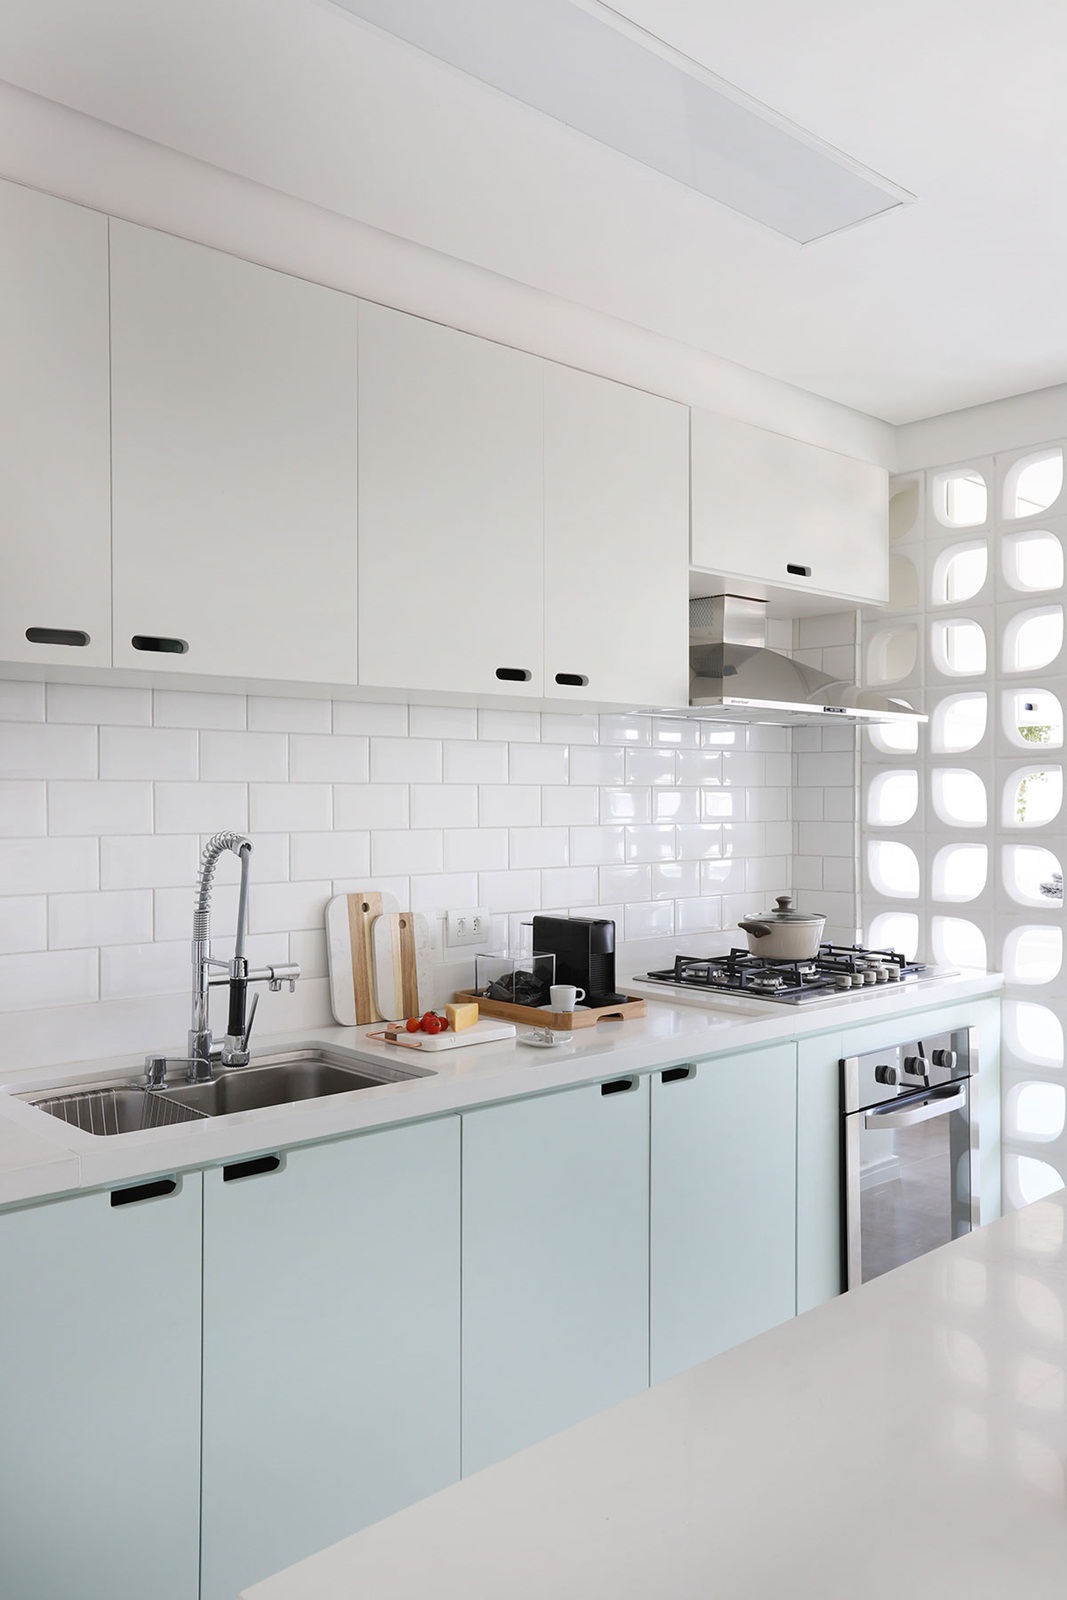 Cozinha pequena com azulejo branco metro, armário branco com verde claro e cobogó.